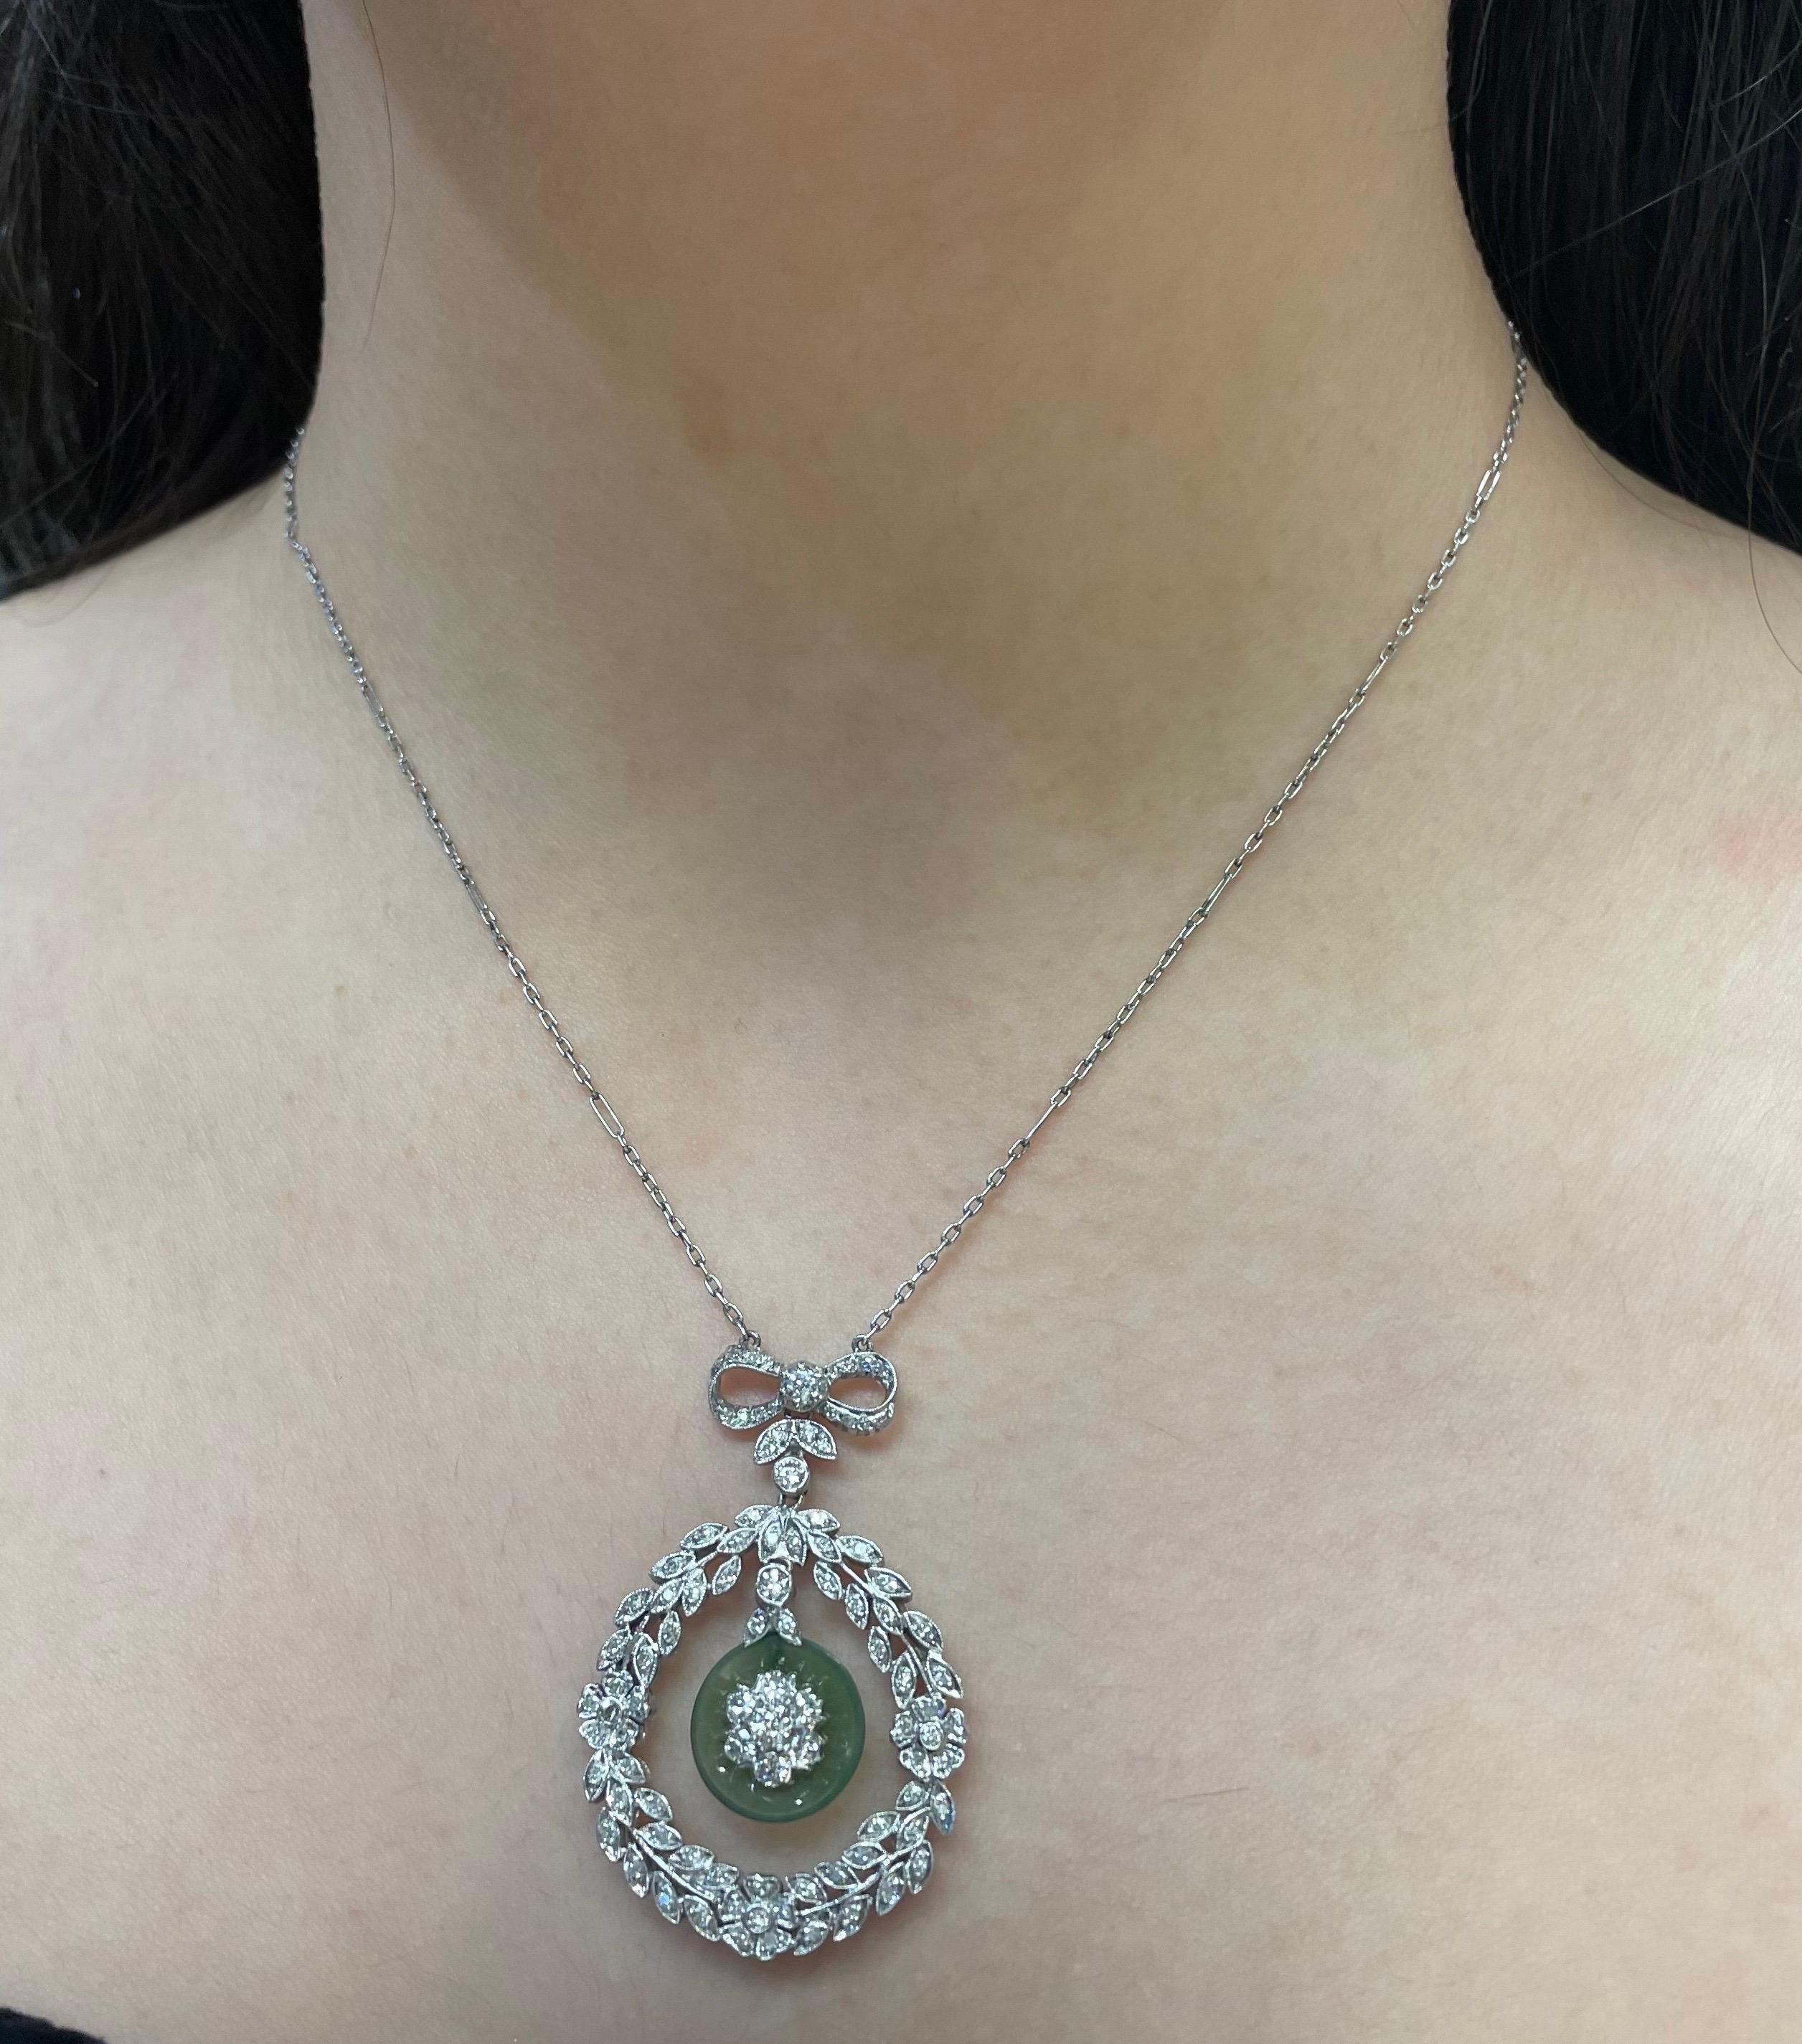 Art Deco Diamant- und Jade-Anhänger-Halskette

Anhänger-Halskette mit einem Diamantkranz in der Mitte, an dem eine Jade baumelt, und einem Blumenmotiv in der Mitte, ergänzt durch eine Schleife an der Spitze 

Ungefähre Kettenlänge: 18,5